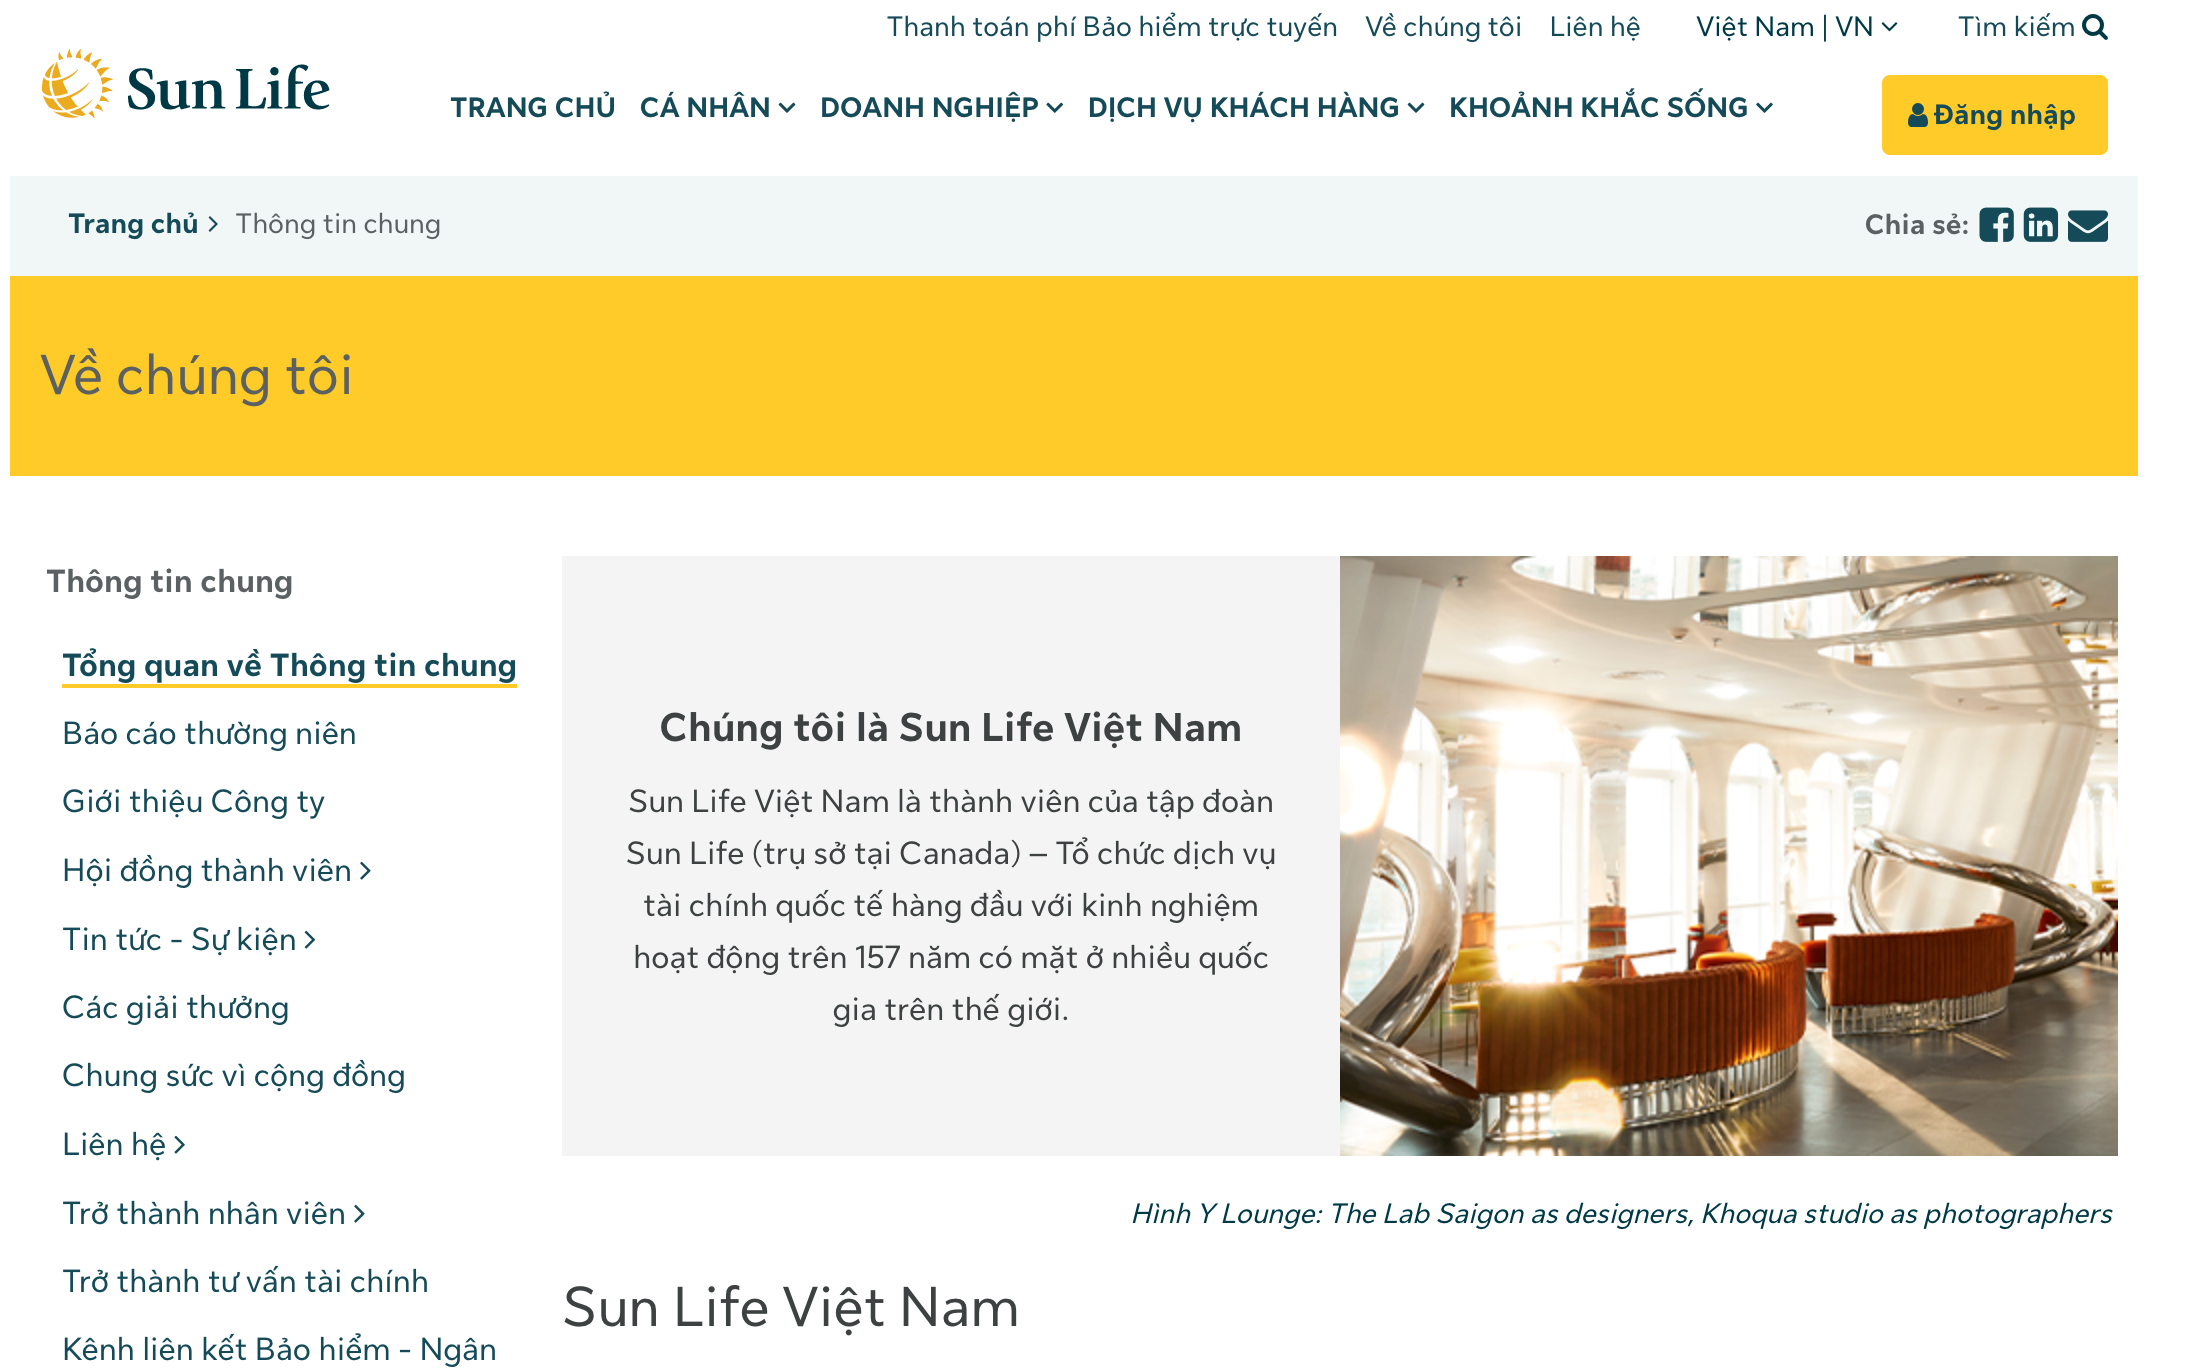 Bảo hiểm nhân thọ Sun Life Việt Nam là doanh nghiệp 100% vốn nước ngoài. Ảnh: Chụp màn hình. 